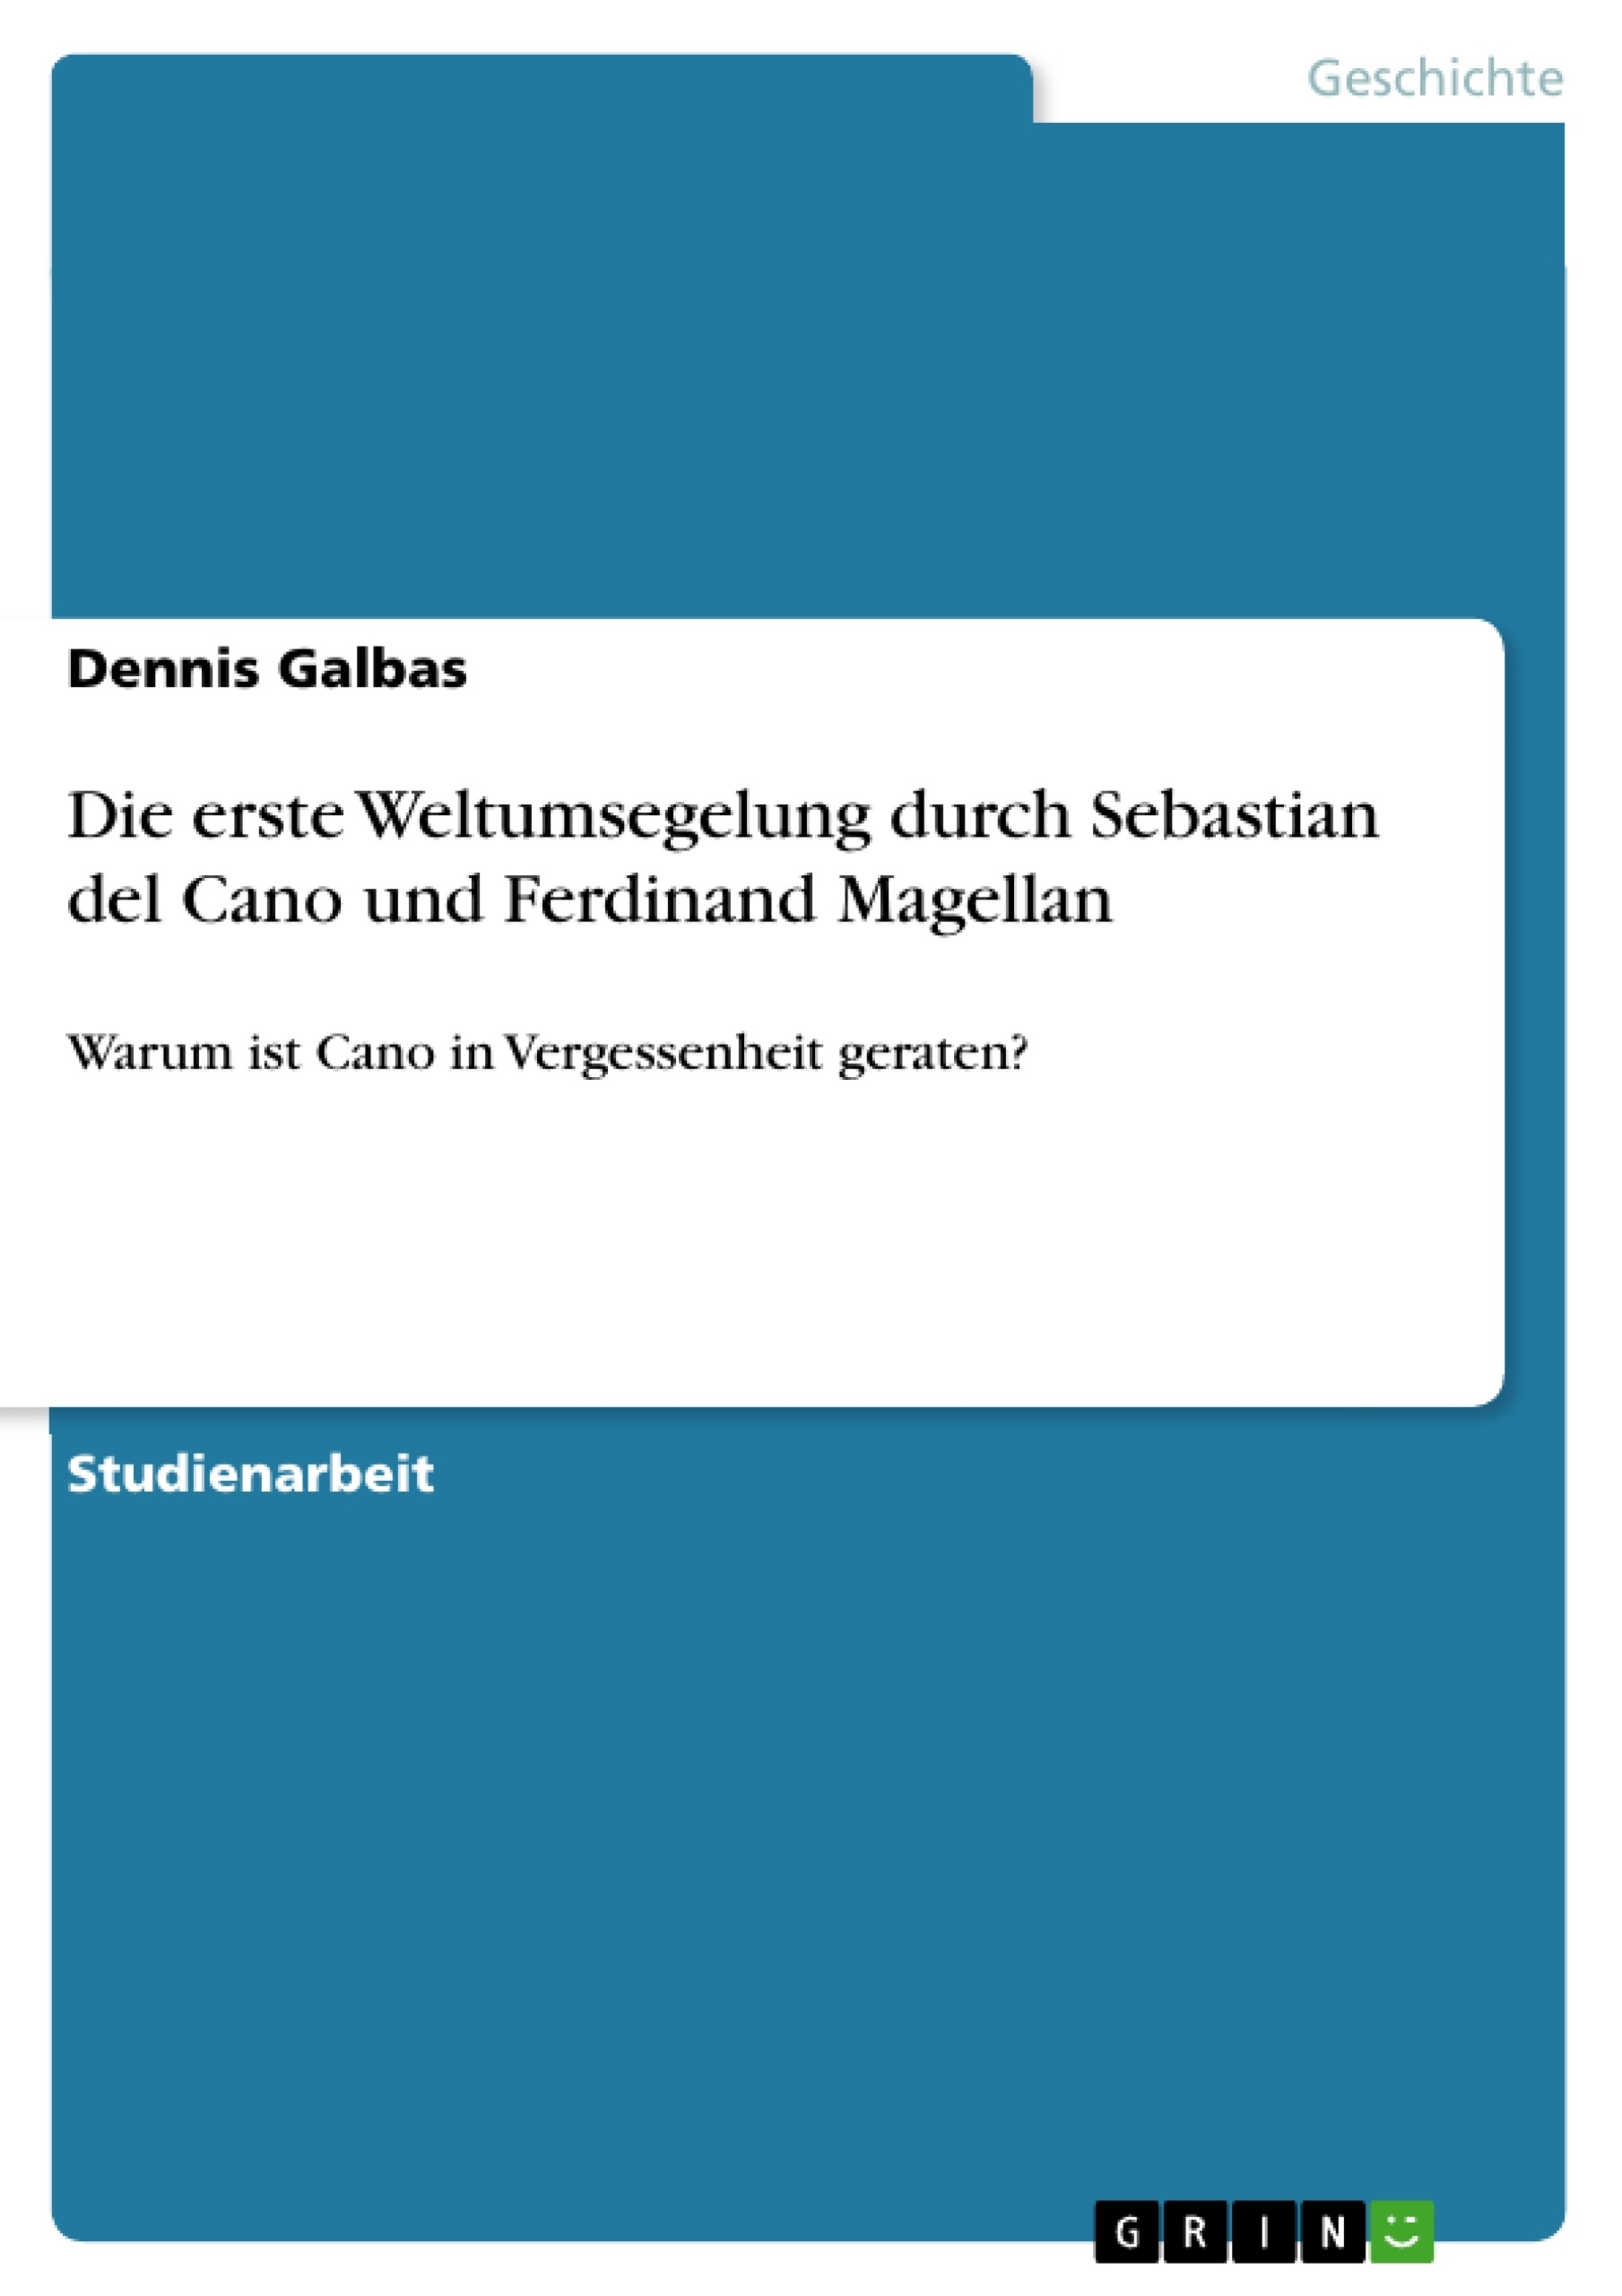 Titel: Die erste Weltumsegelung durch Sebastian del Cano und Ferdinand Magellan